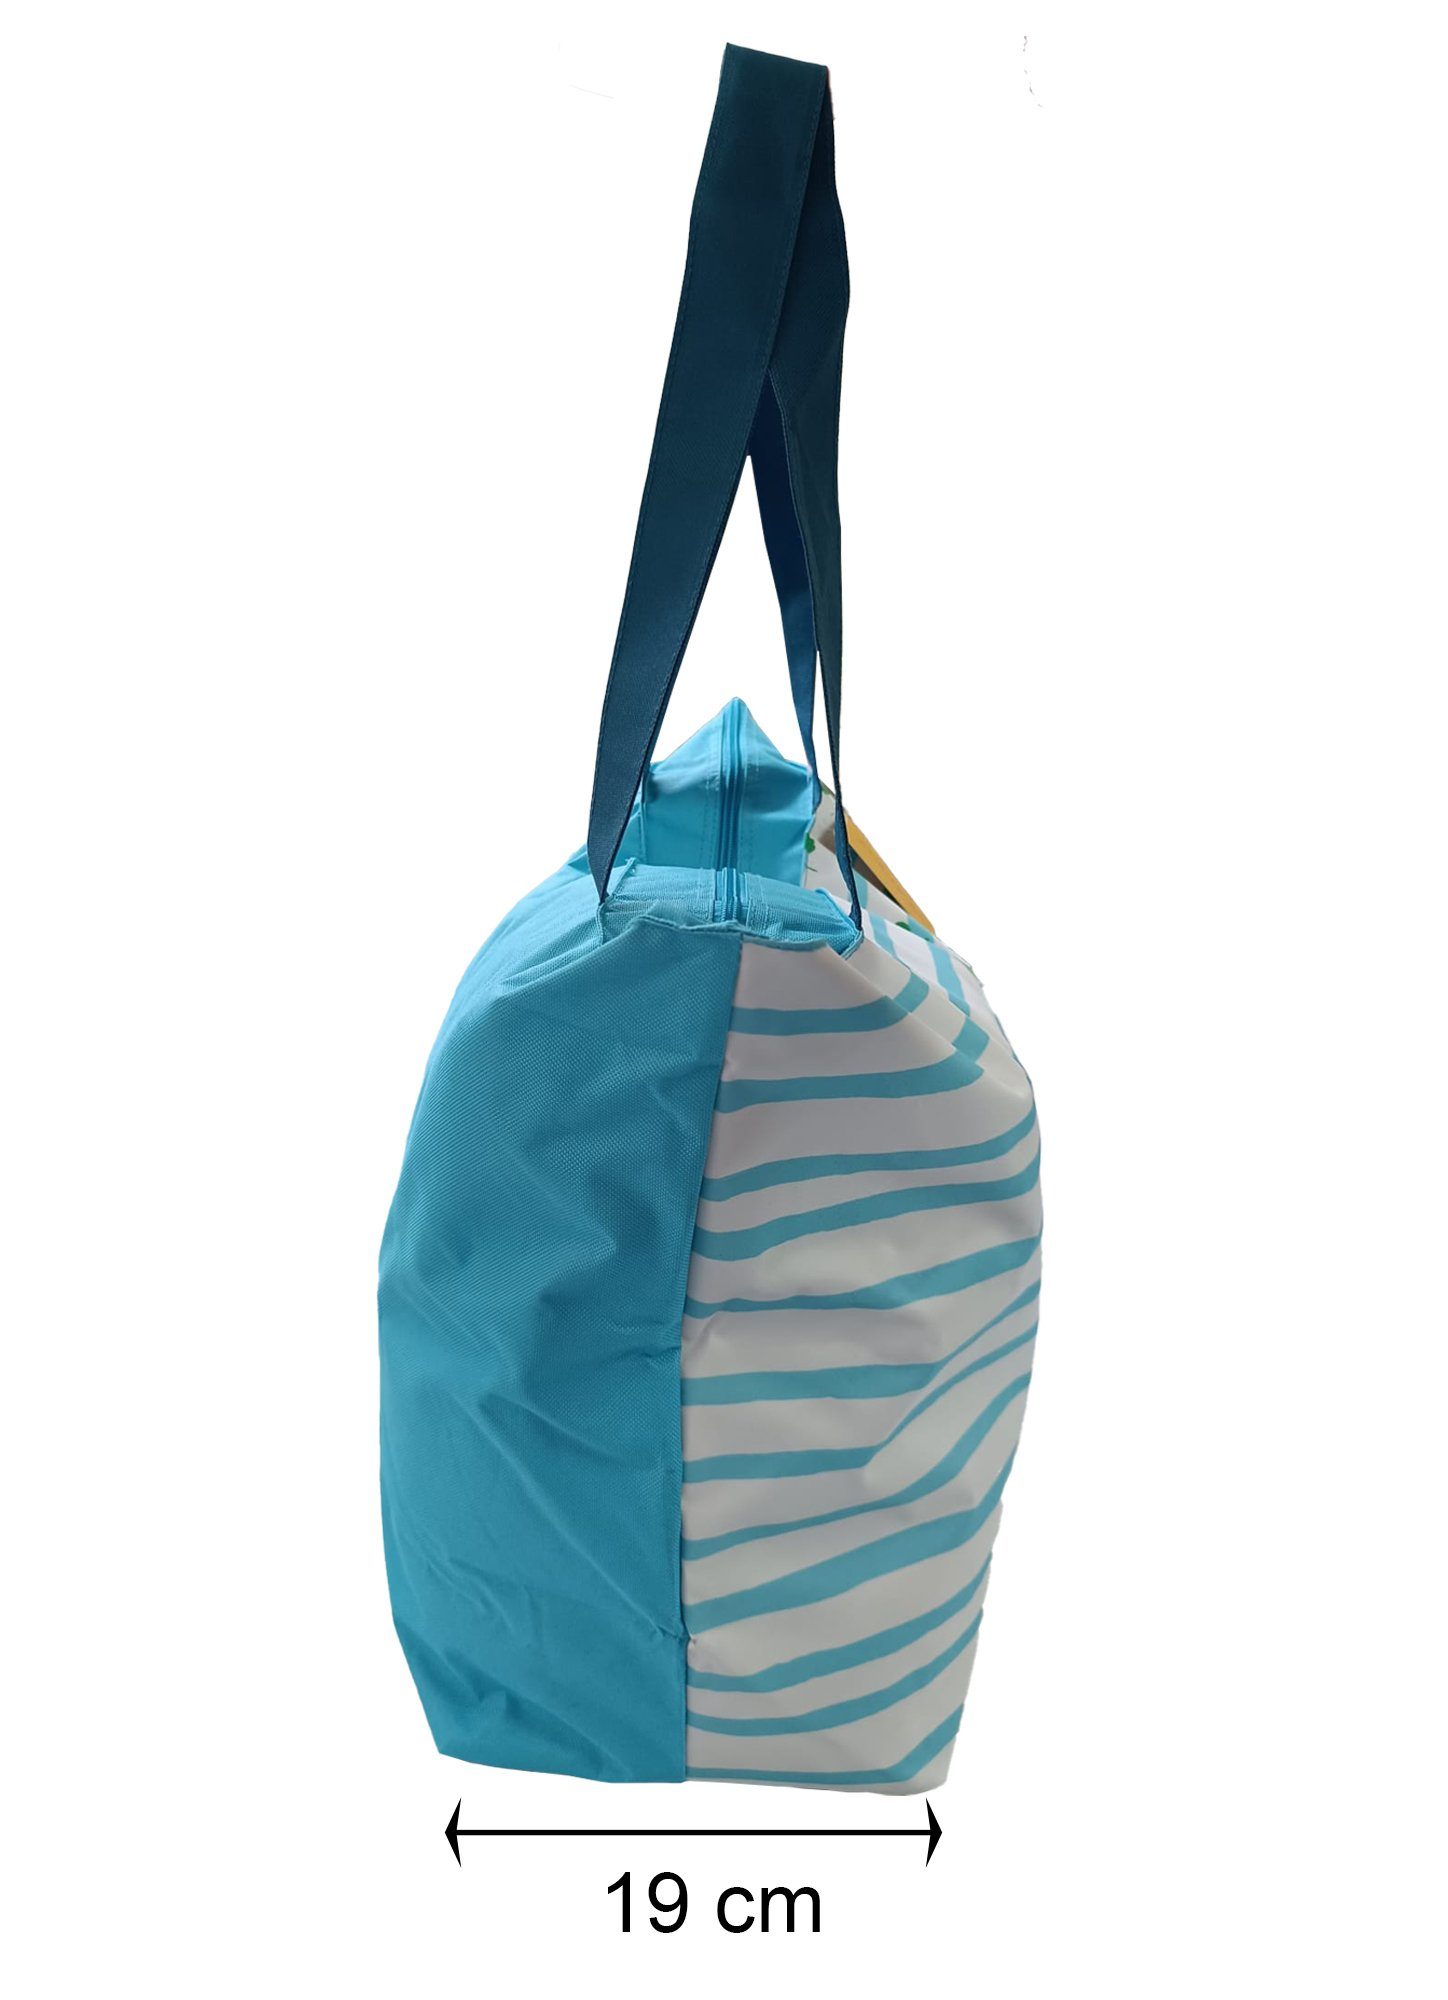 Blau Badetasche Strandtasche Reißverschluss Einkaufsshopper Beach Shopper und Deko Haus Schultertasche